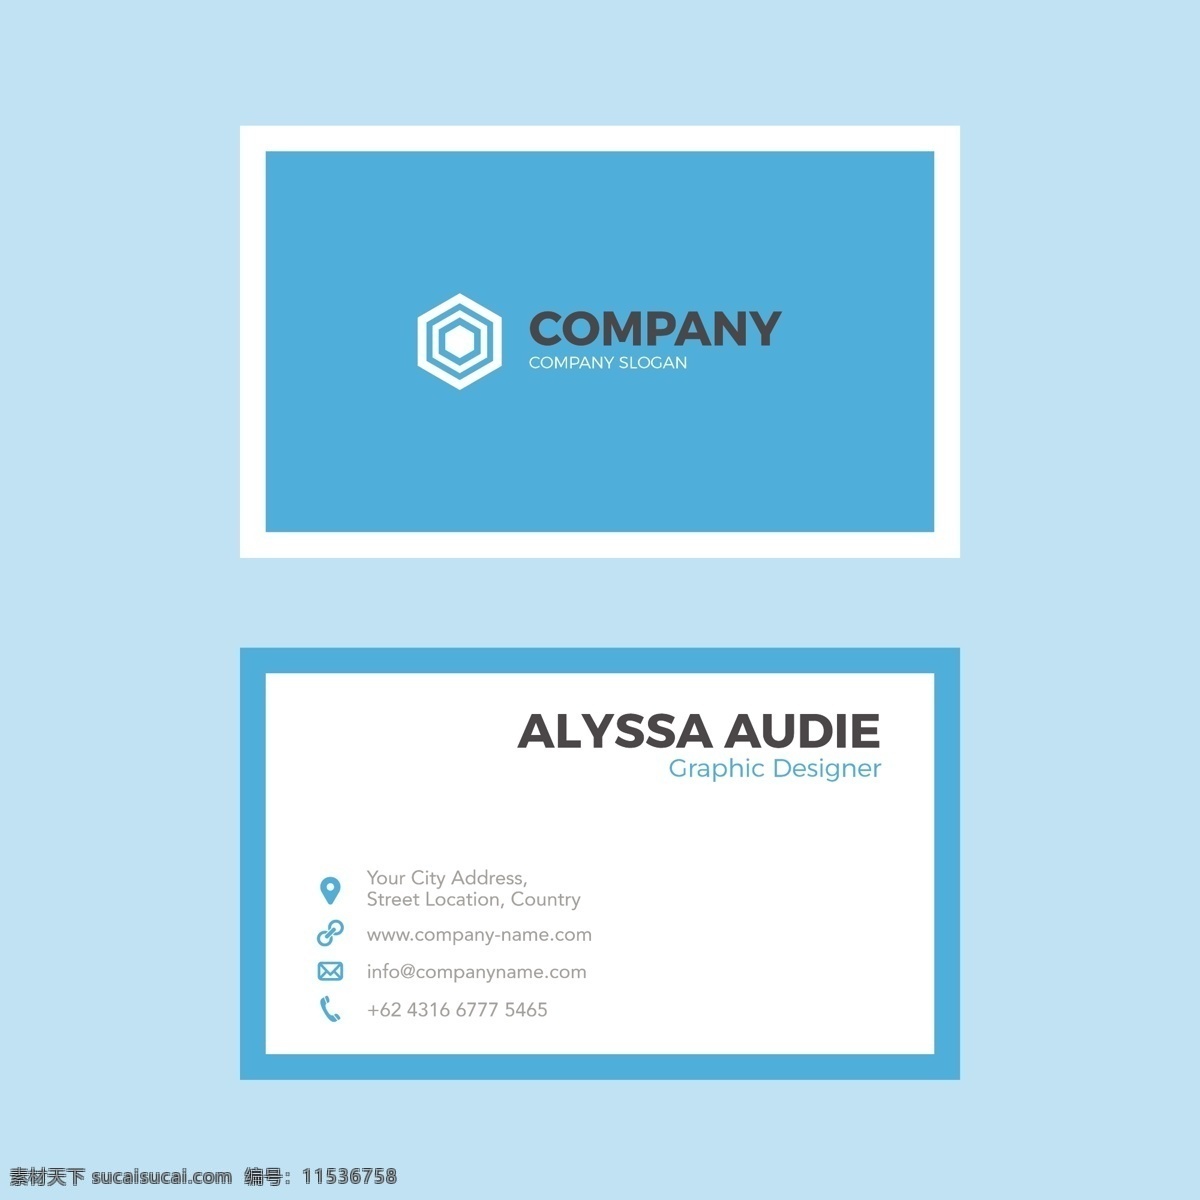 蓝色名片设计 商标 名片 商务 抽象 卡片 模板 蓝色 办公室 展示 文具 公司 抽象标志 企业标识 品牌 现代 身份